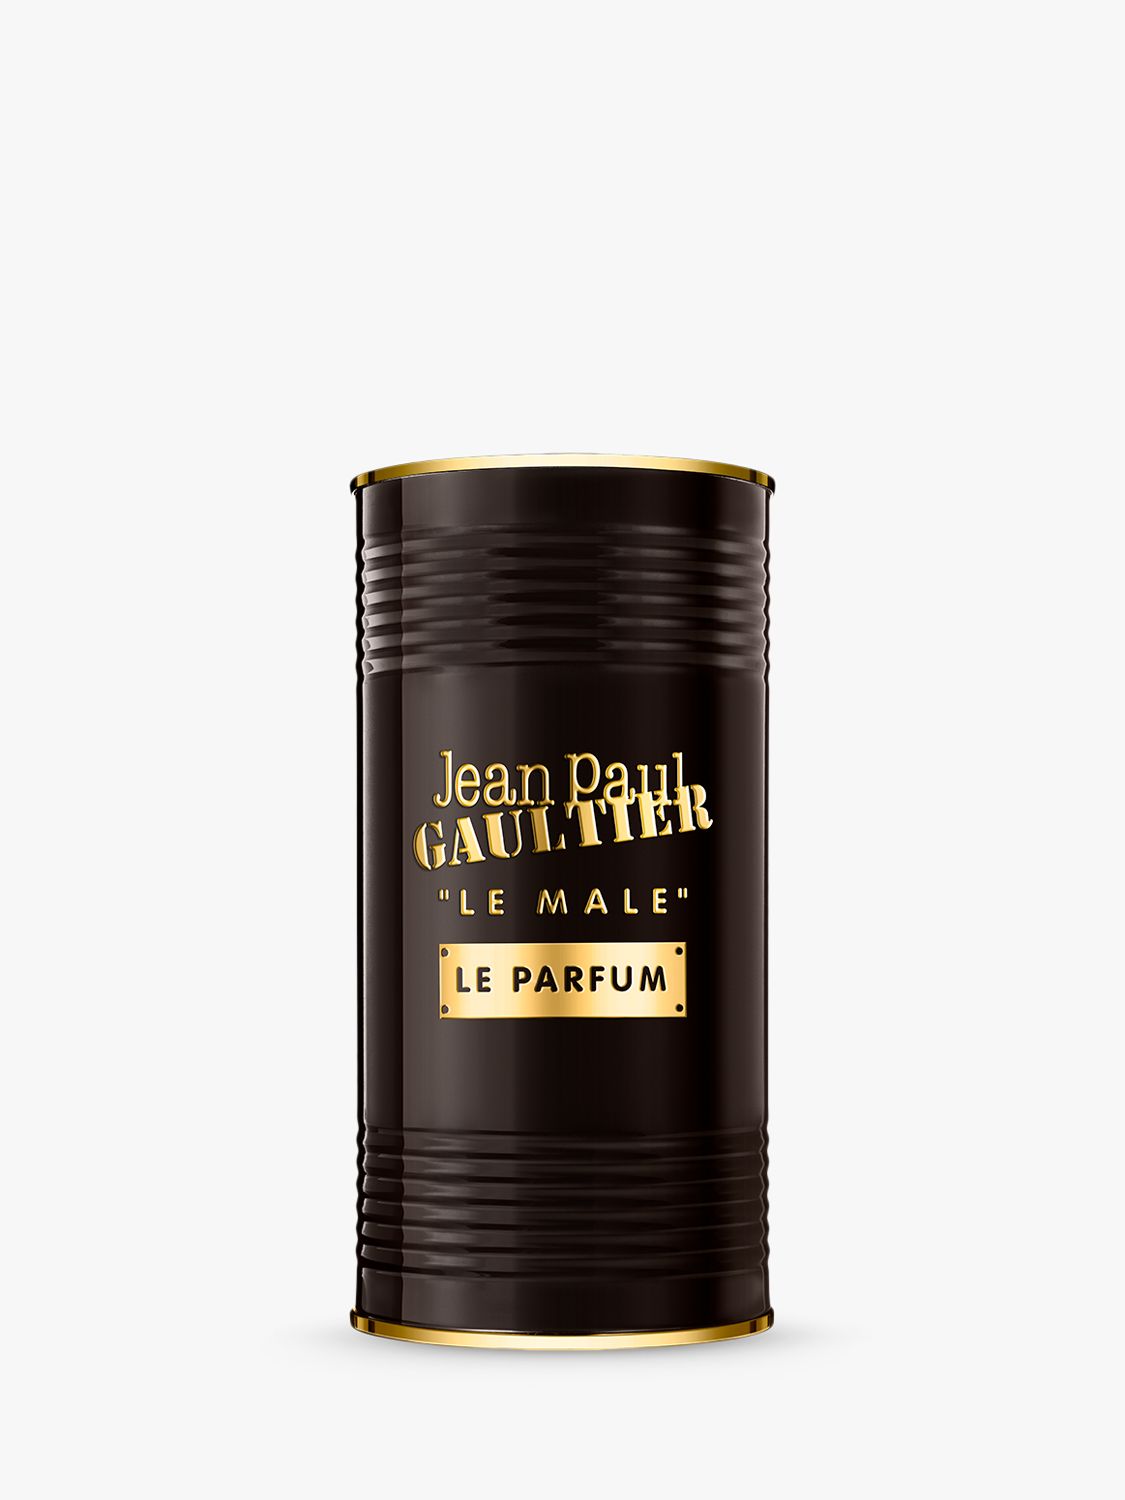 Jean Paul Gaultier Le Male Le Parfum, 75ml at John Lewis & Partners